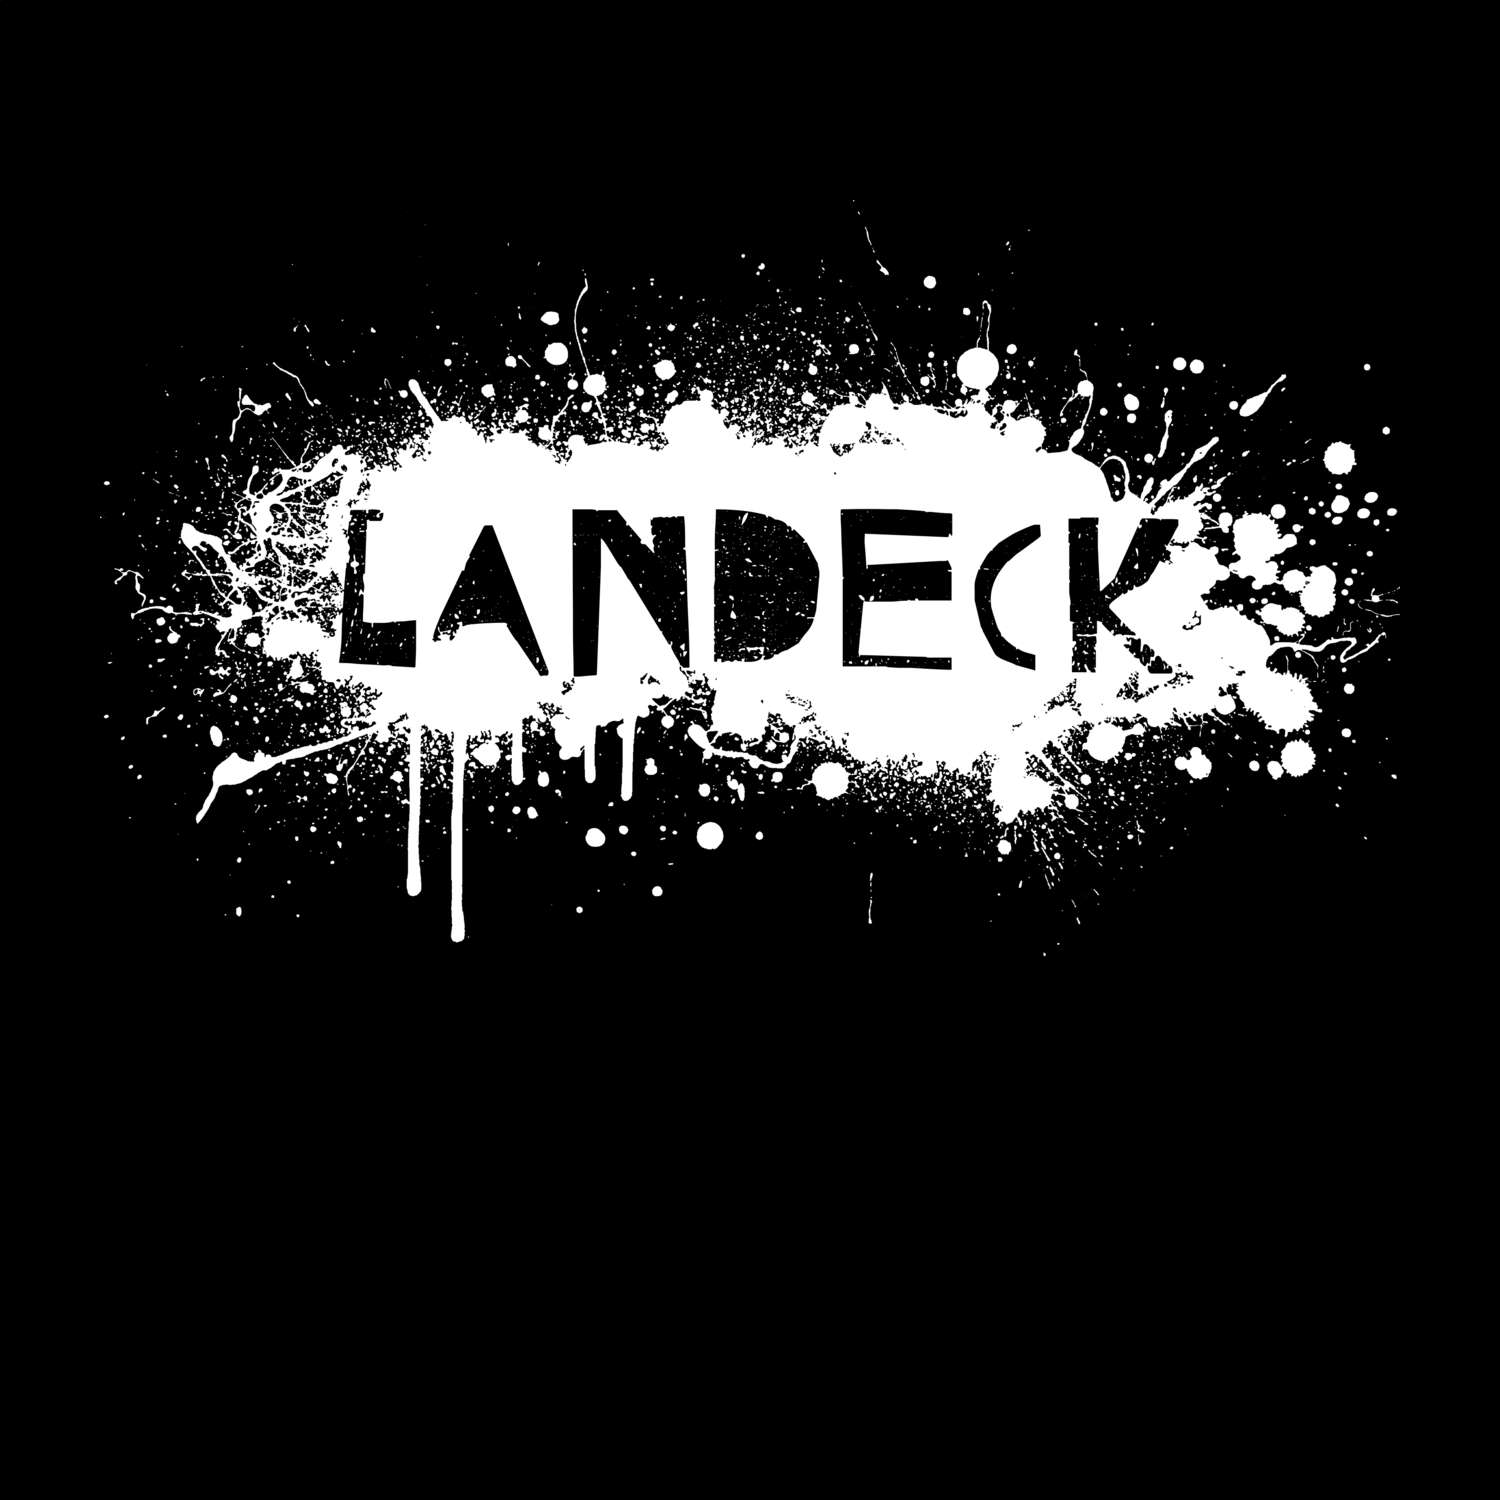 Landeck T-Shirt »Paint Splash Punk«